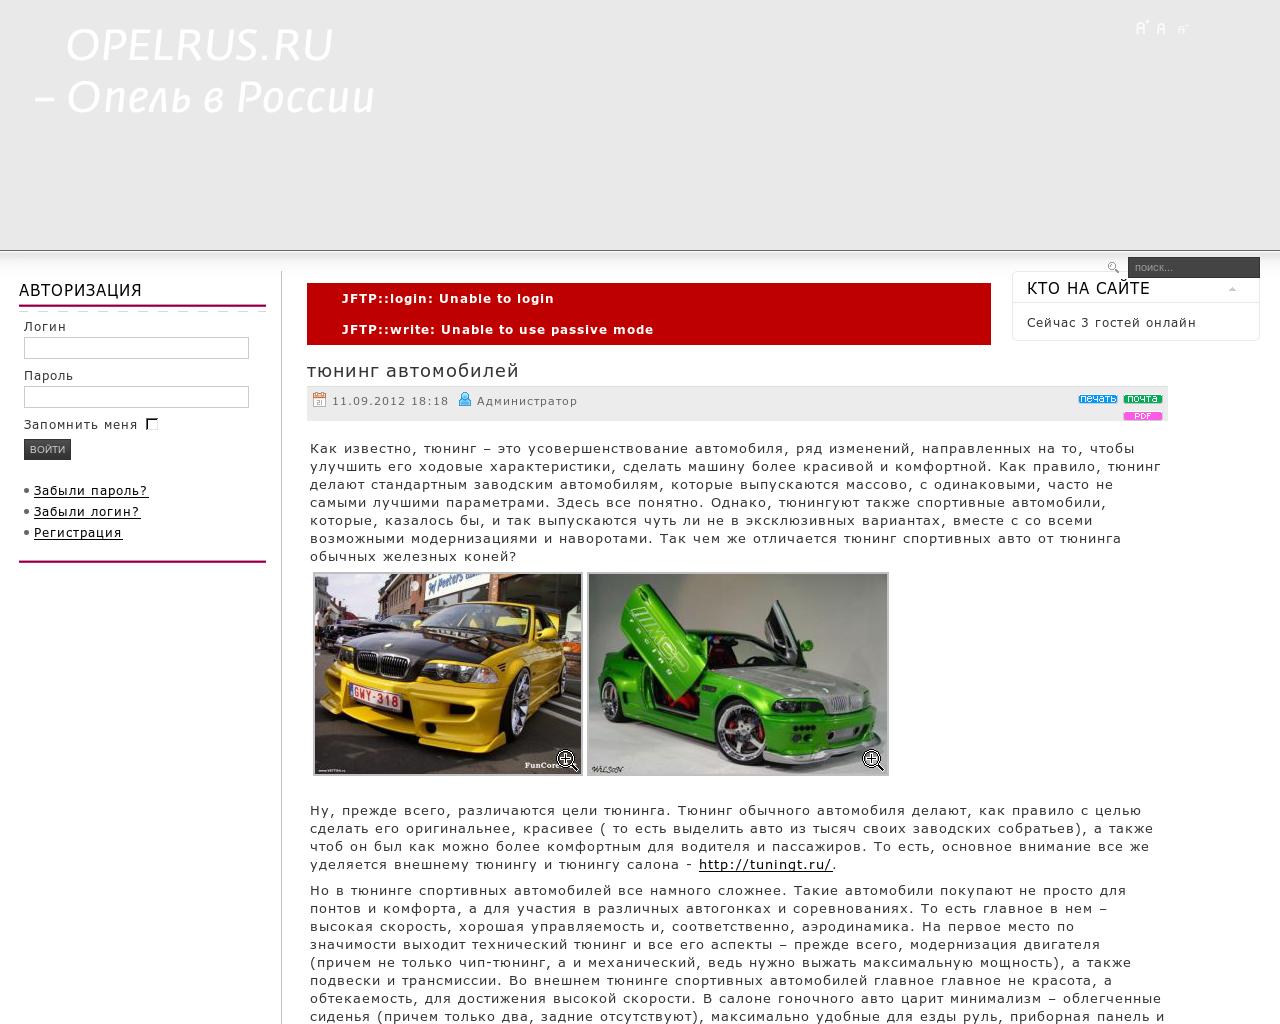 Изображение сайта opelrus.ru в разрешении 1280x1024